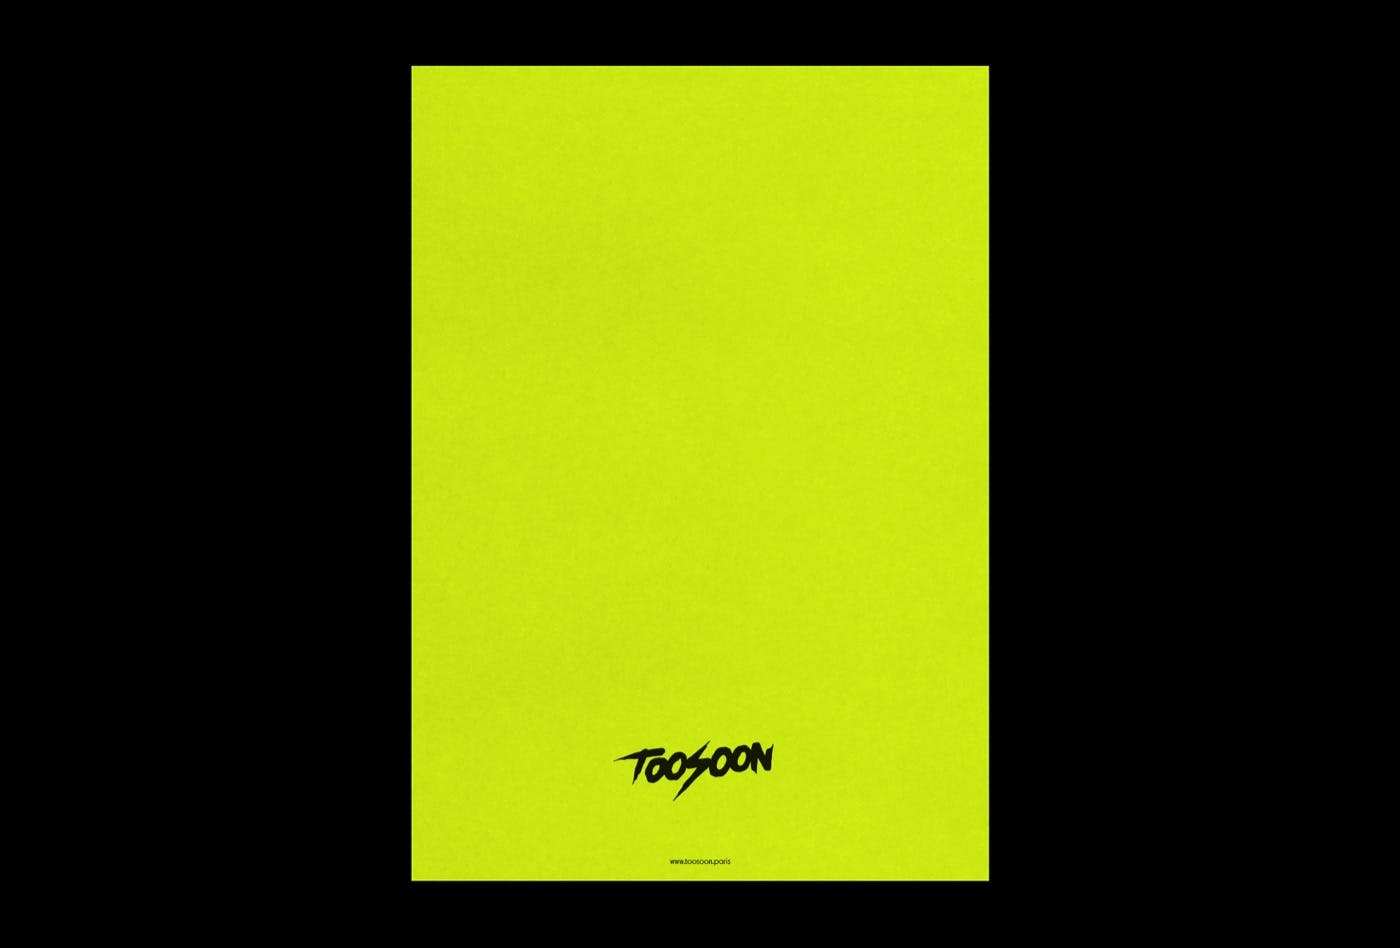 TOOSOON - Branding Print
